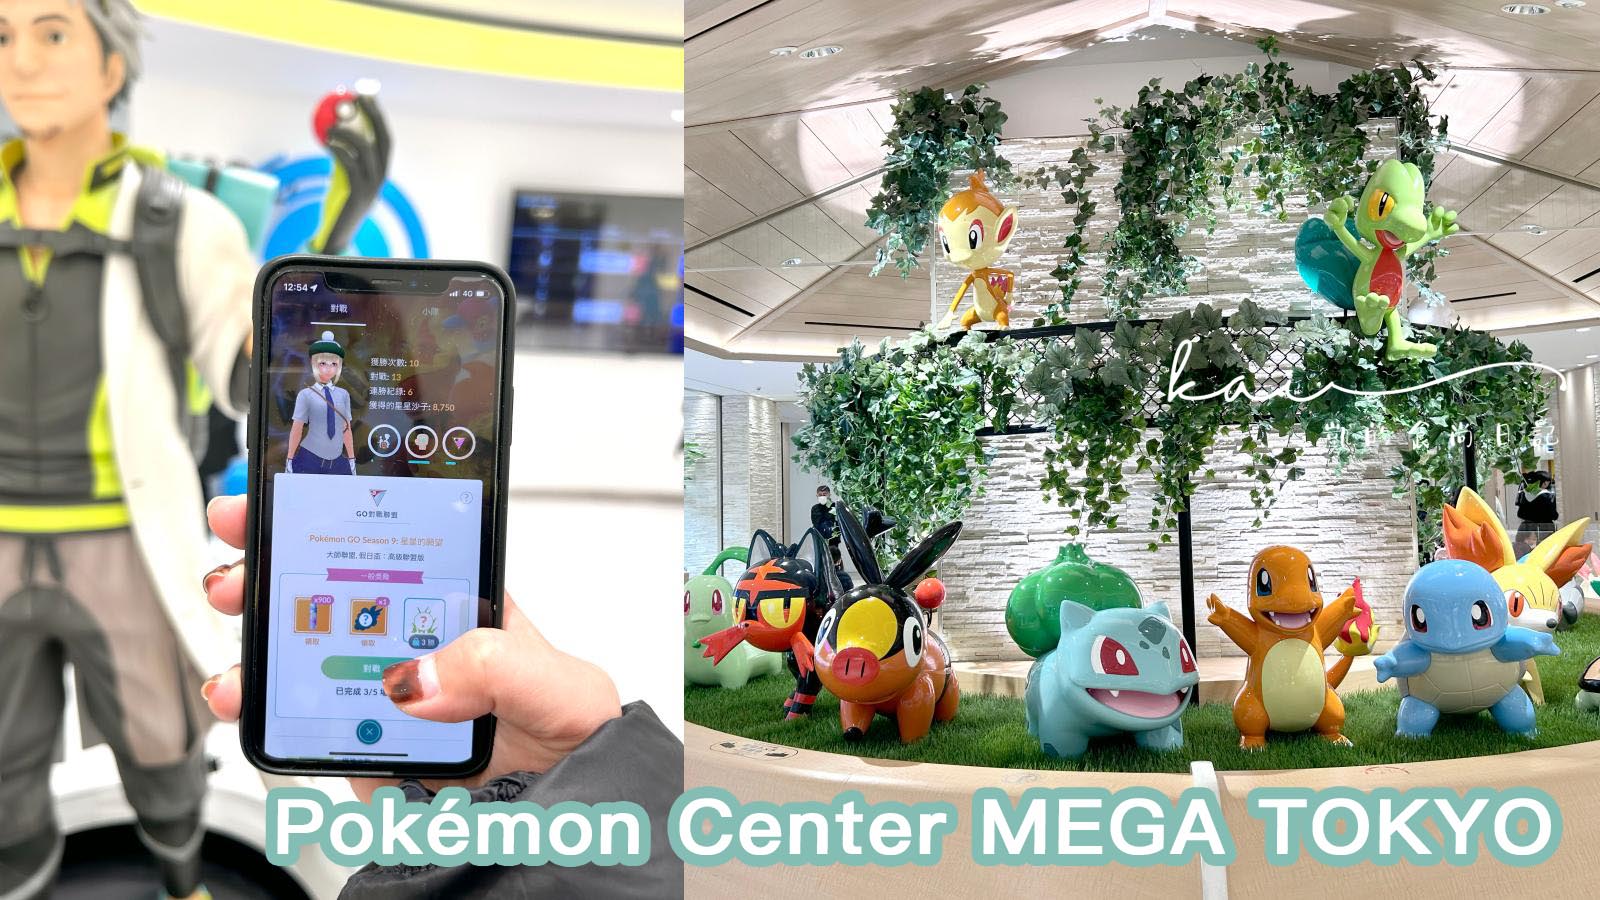 ☆【最大寶可夢中心】池袋Pokémon Center MEGA TOKYO。２大必逛重點：訓練師對戰基地、Pikachu Sweets @凱的日本食尚日記